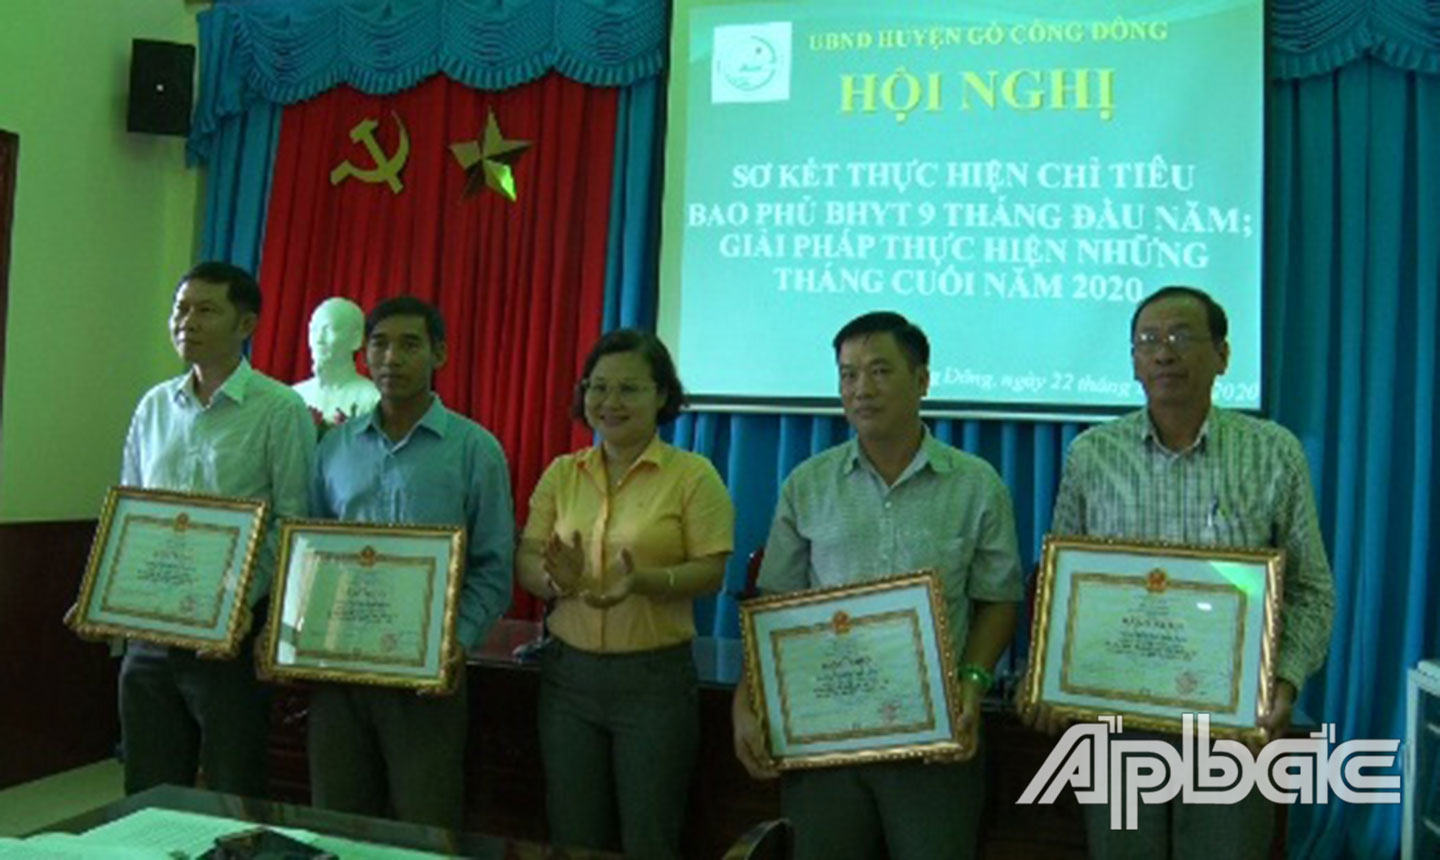 Bà Lê Hồng Tâm, Phó UBND huyện Gò Công Đông trao Bằng khen của BHXH Việt Nam cho các tập thể